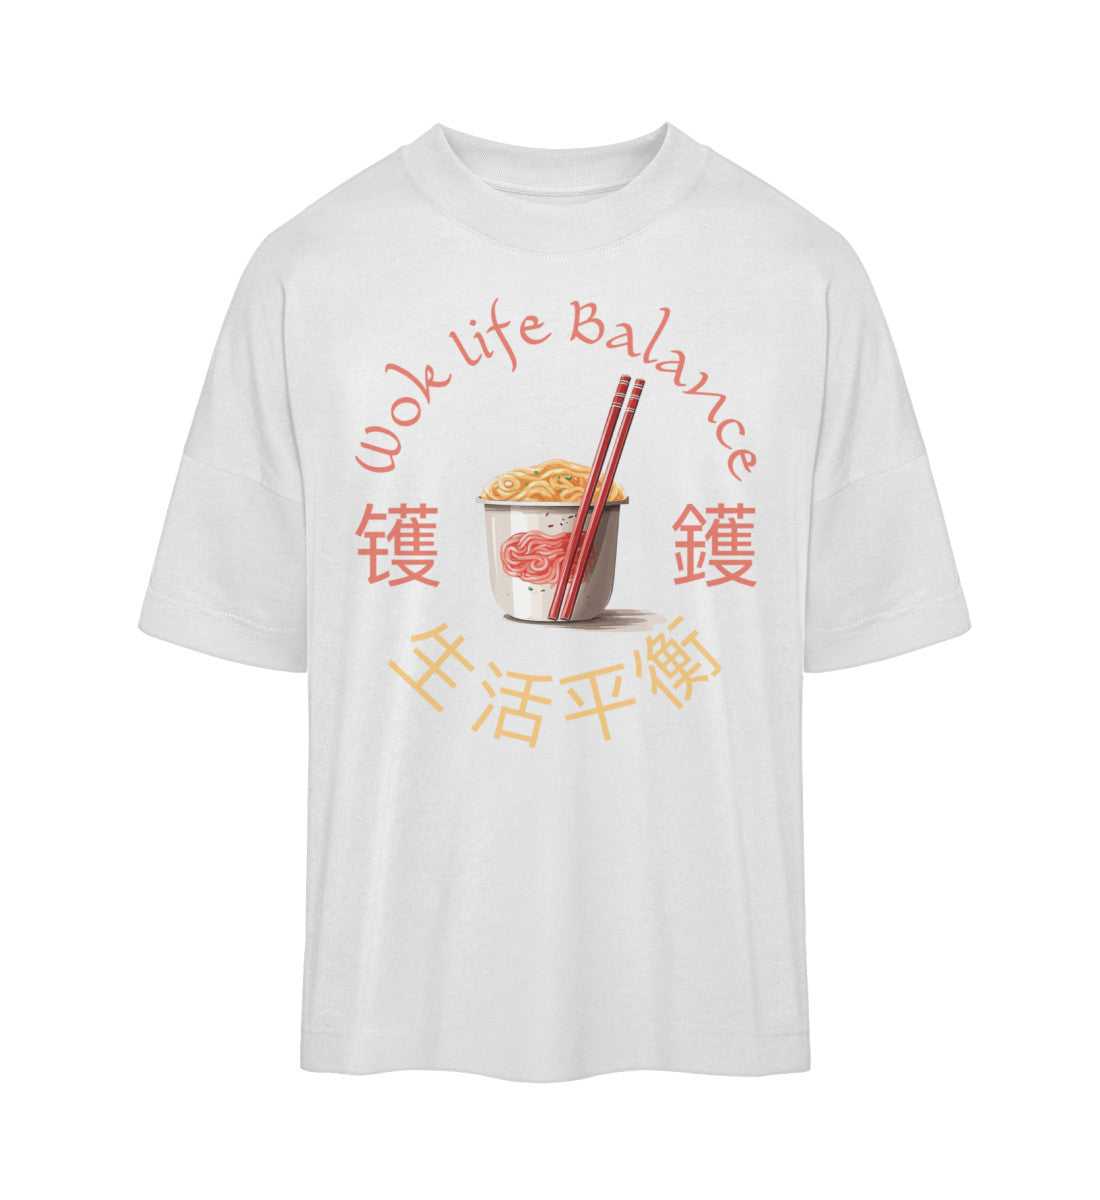 Weißes T-Shirt Unisex Oversize Fit für Frauen und Männer bedruckt mit dem Design der Roger Rockawoo Kollektion Asia Food Wok Life Balance